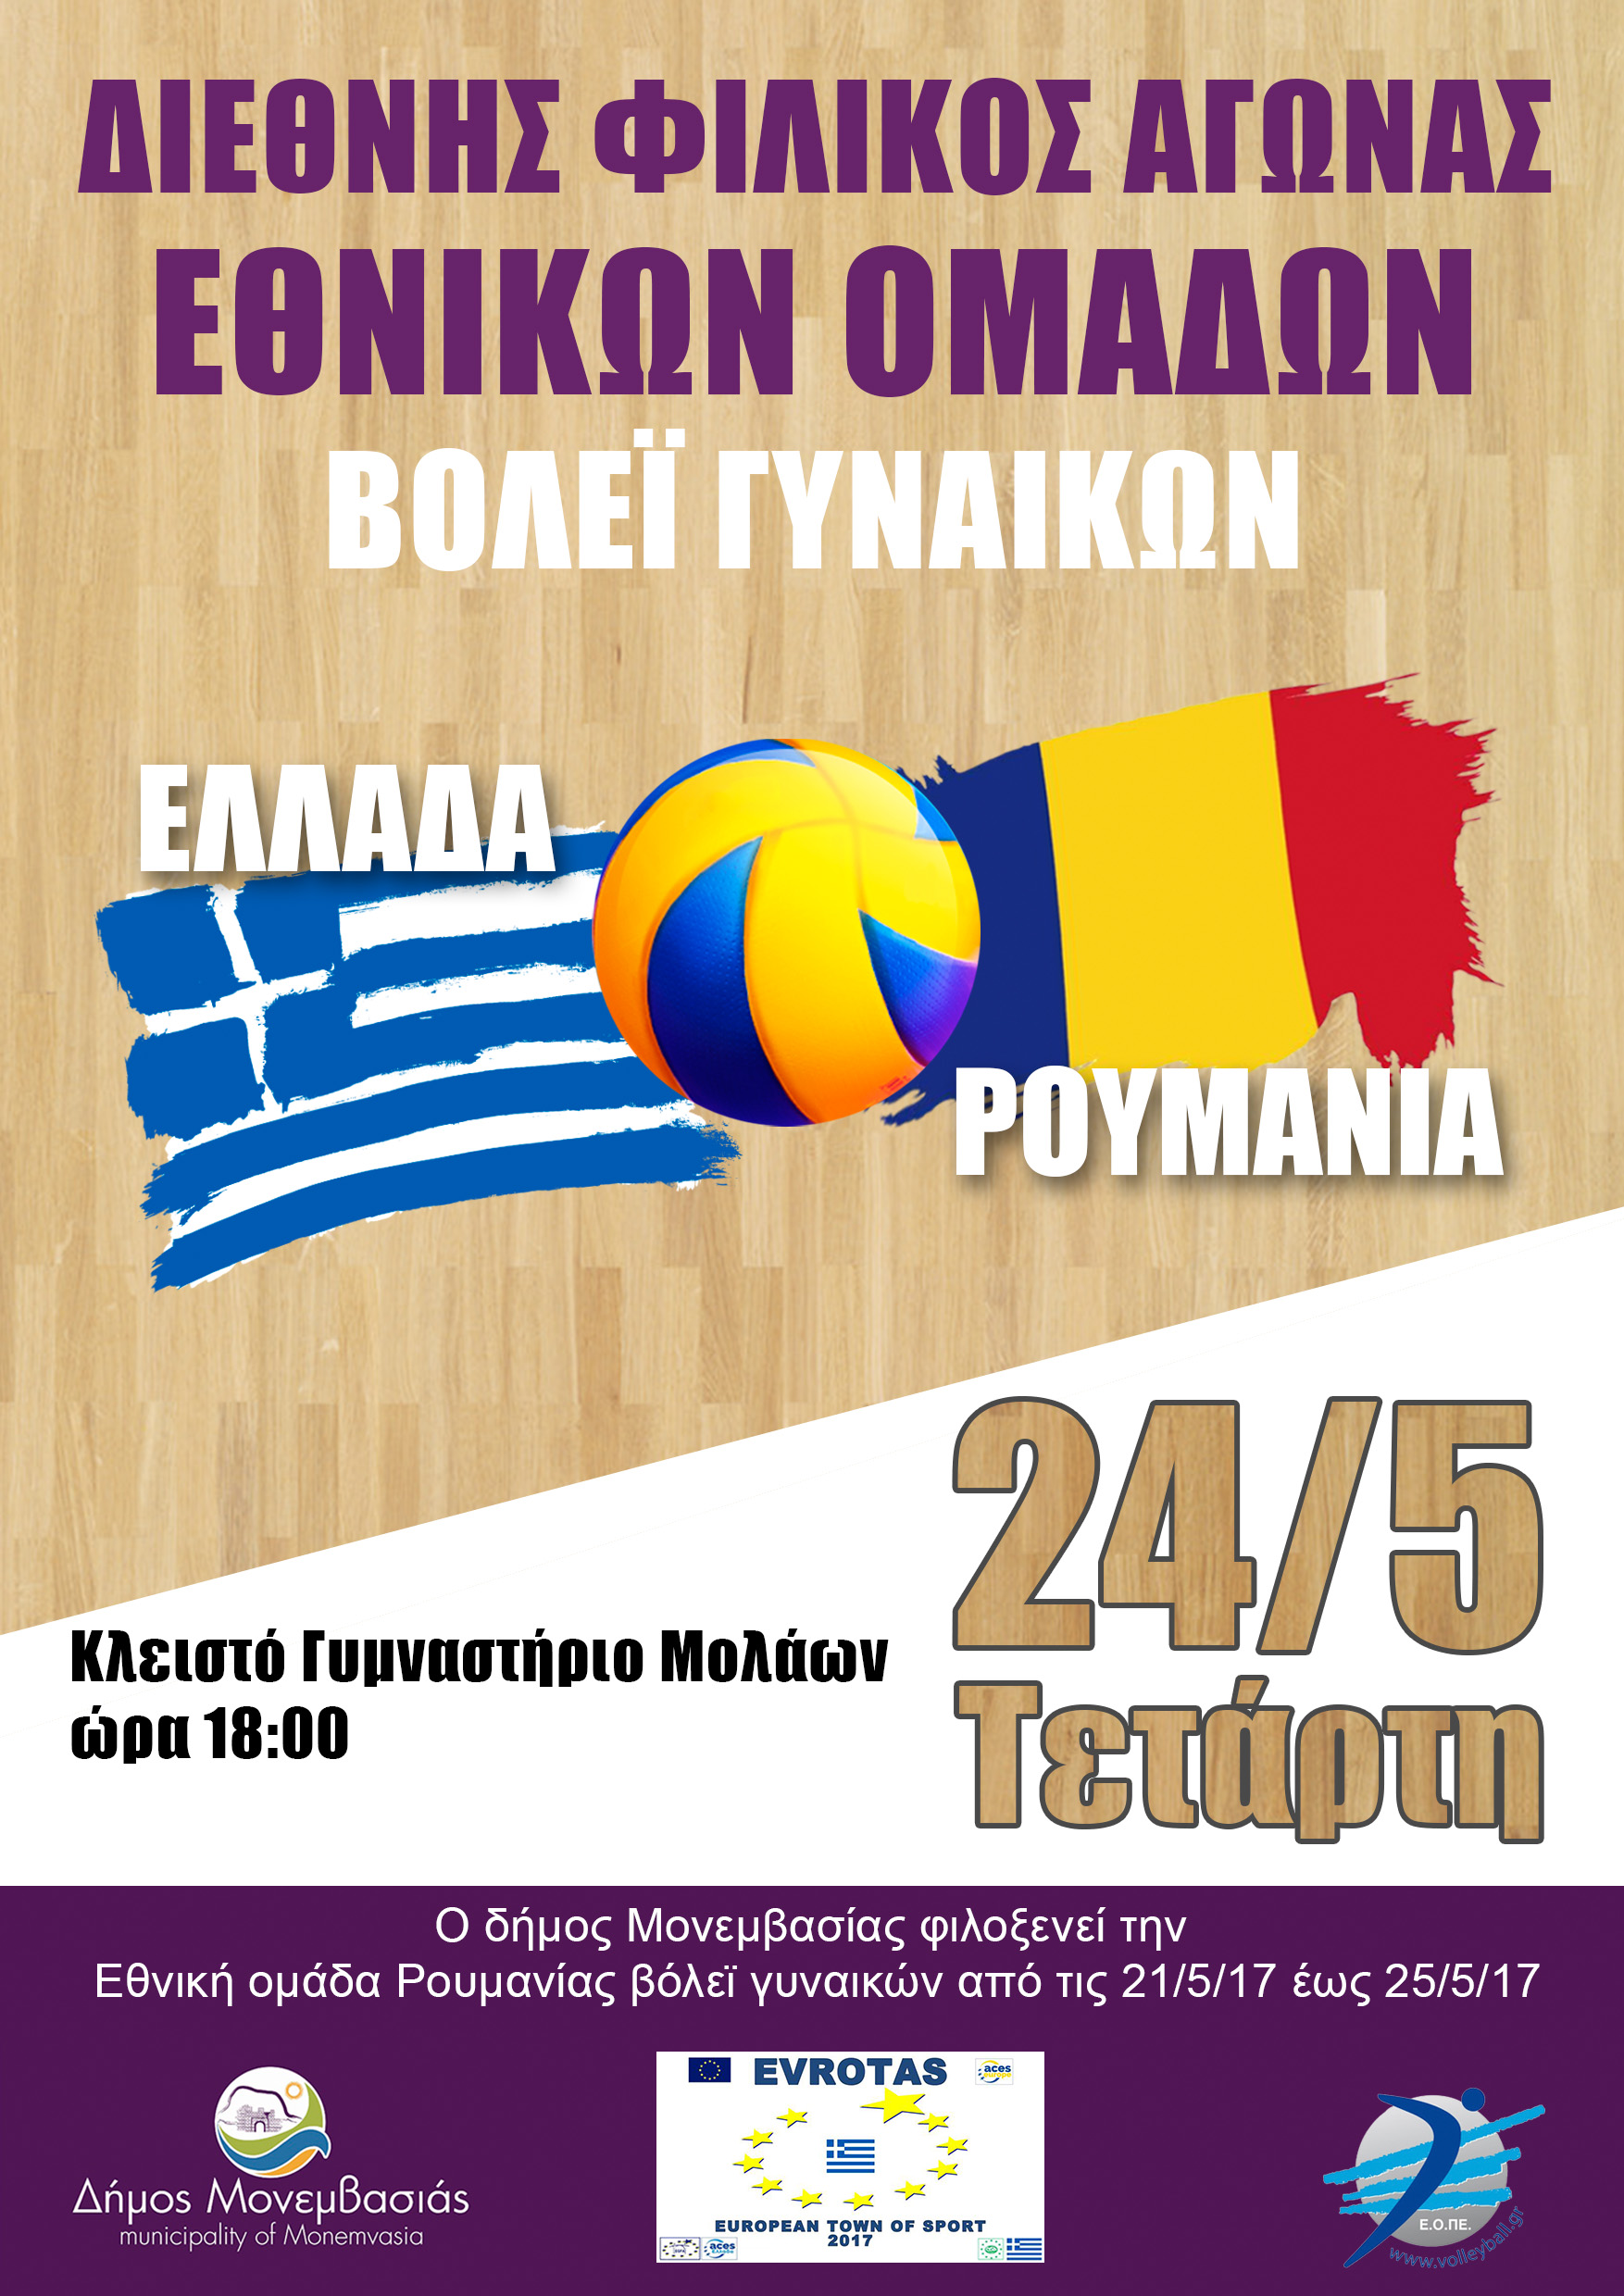 Φιλικός αγώνας μεταξύ των Εθνικών Ομάδων βόλεϊ γυναικών  Ελλάδας – Ρουμανίας στους Μολάους